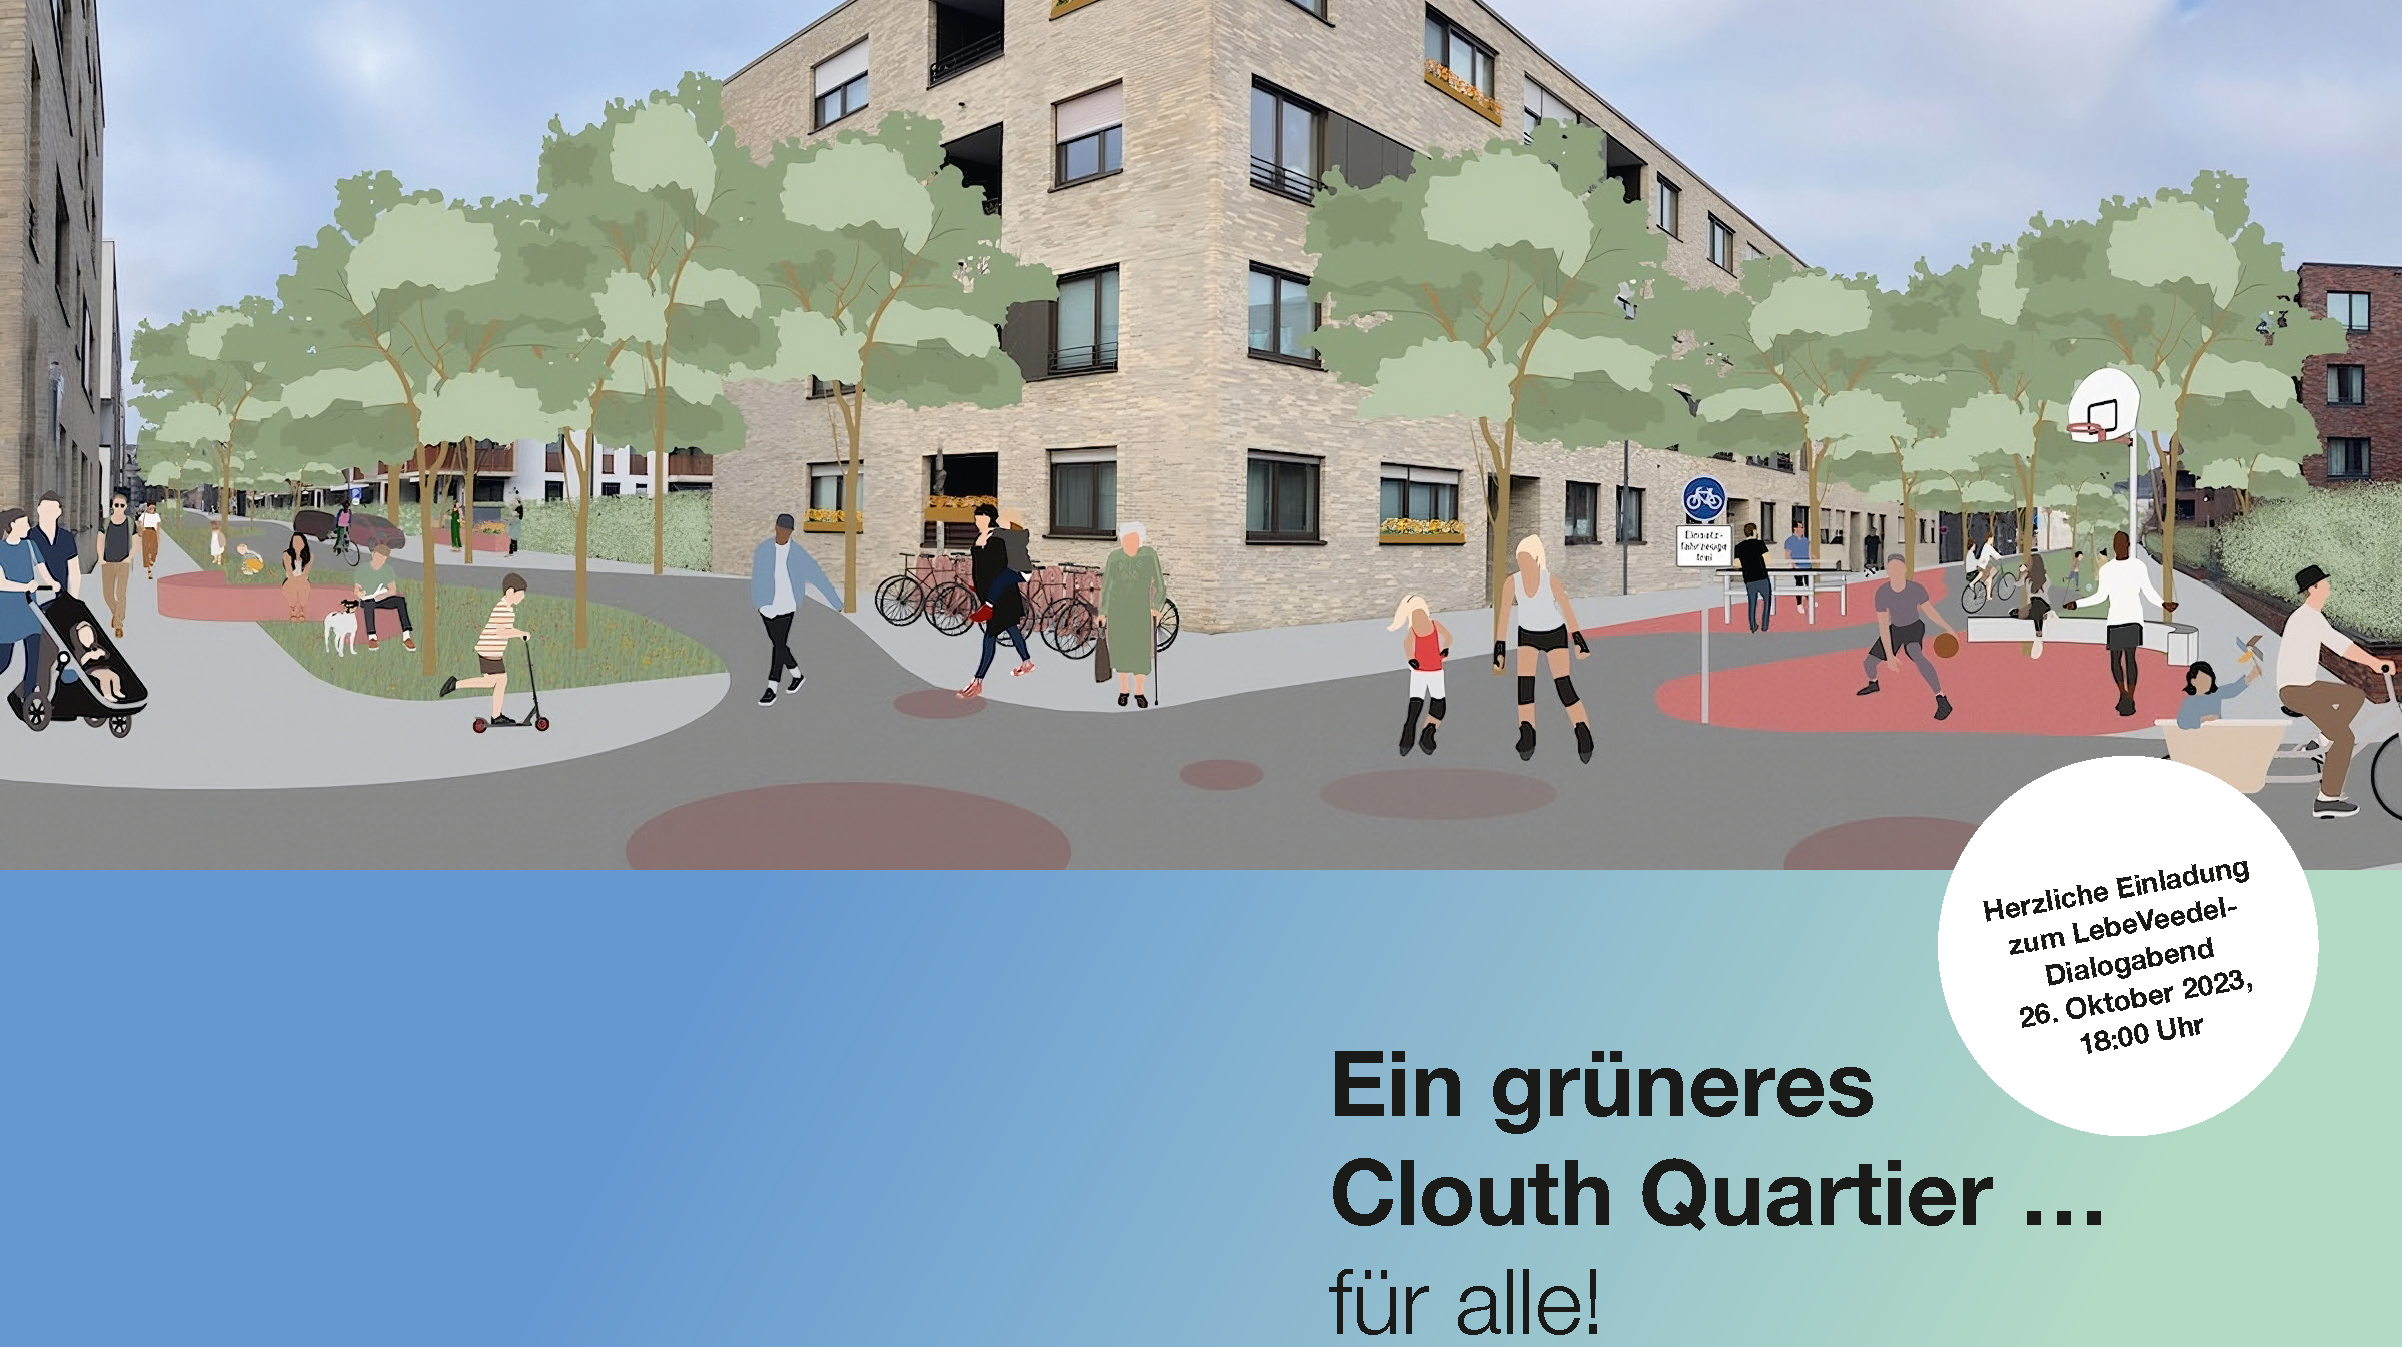 Titelbild der Veranstaltungseinladung "Ein grüneres Clouth Quartier ... für alle!" - Illustration: Gebäude und Straßen aus dem Cloud Quartier mit einer grüneren Gestaltung.